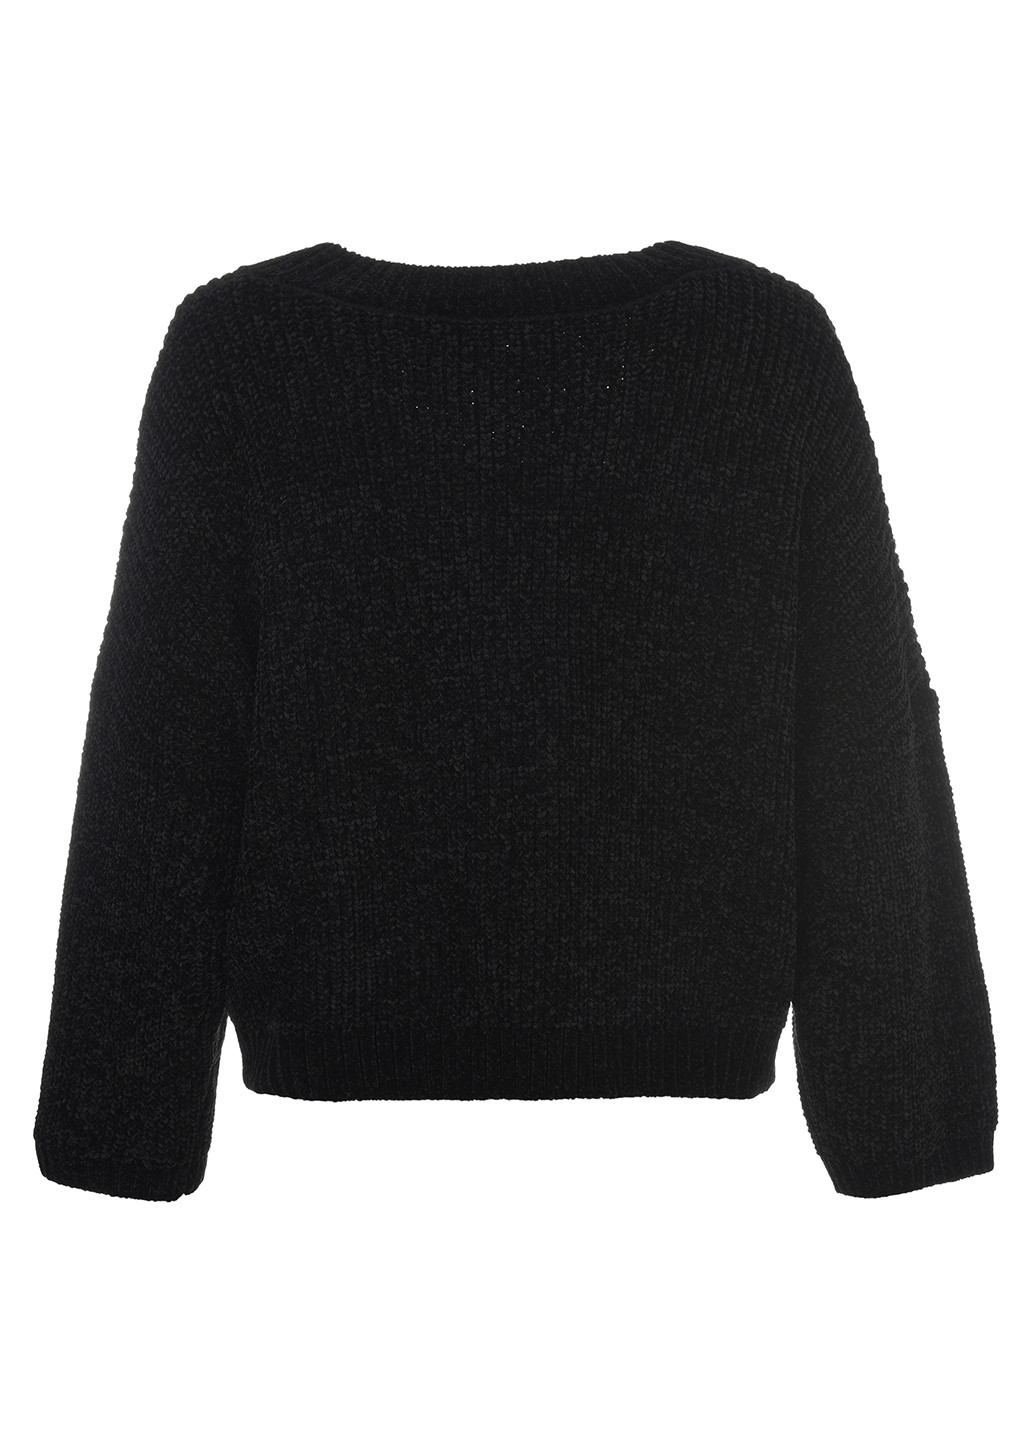 Черный зимний джемпер пуловер LOVE REPUBLIC